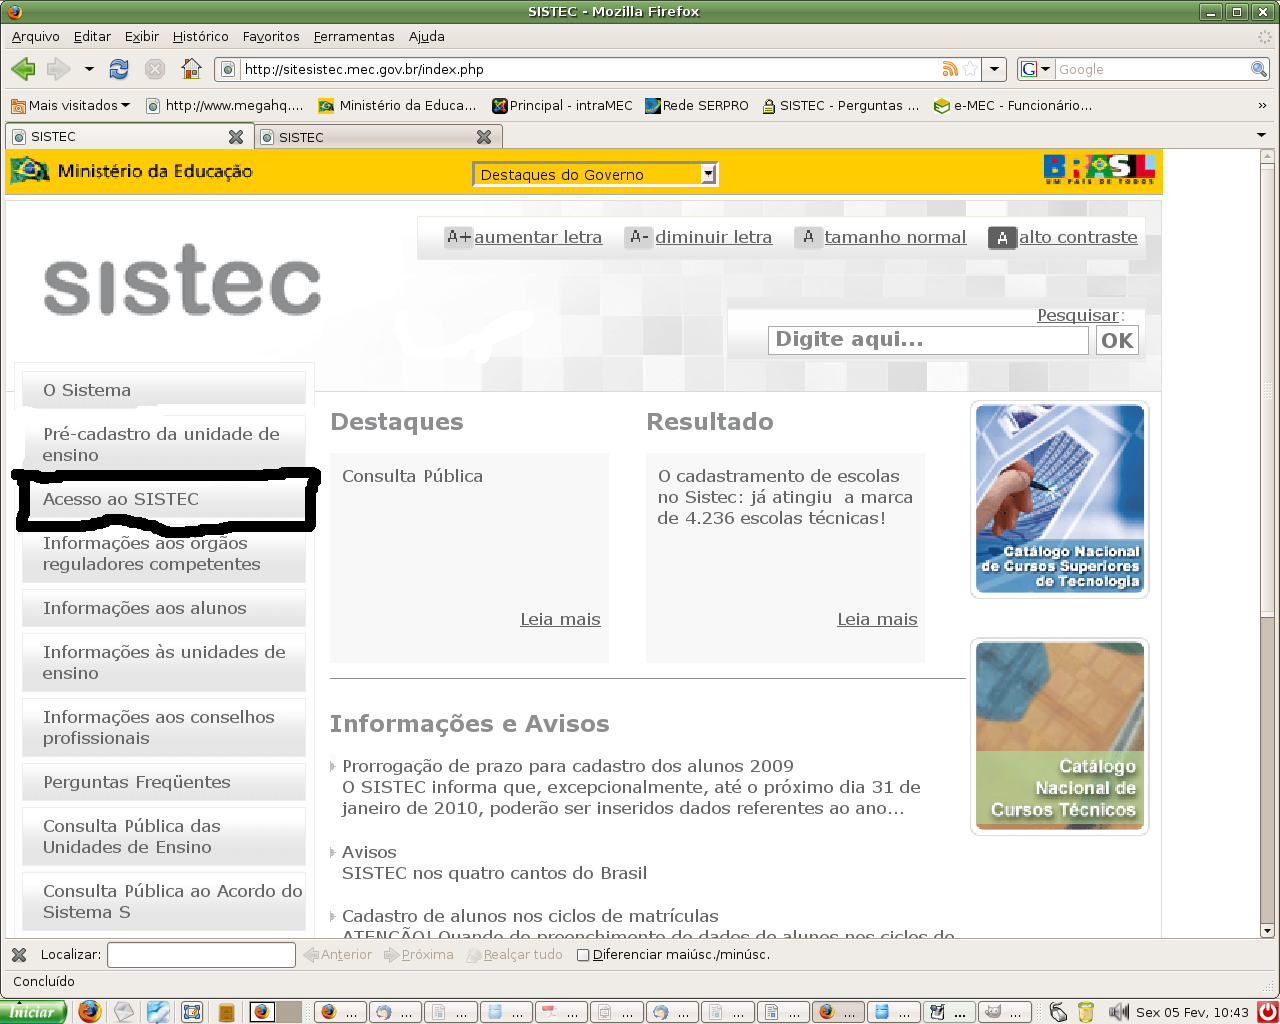 SENHA SSD DO USUÁRIO O segundo passo para se ter acesso ao SISTEC é a criação de uma senha, para tanto deve-se acessar o site do sistec: portal.mec.gov.